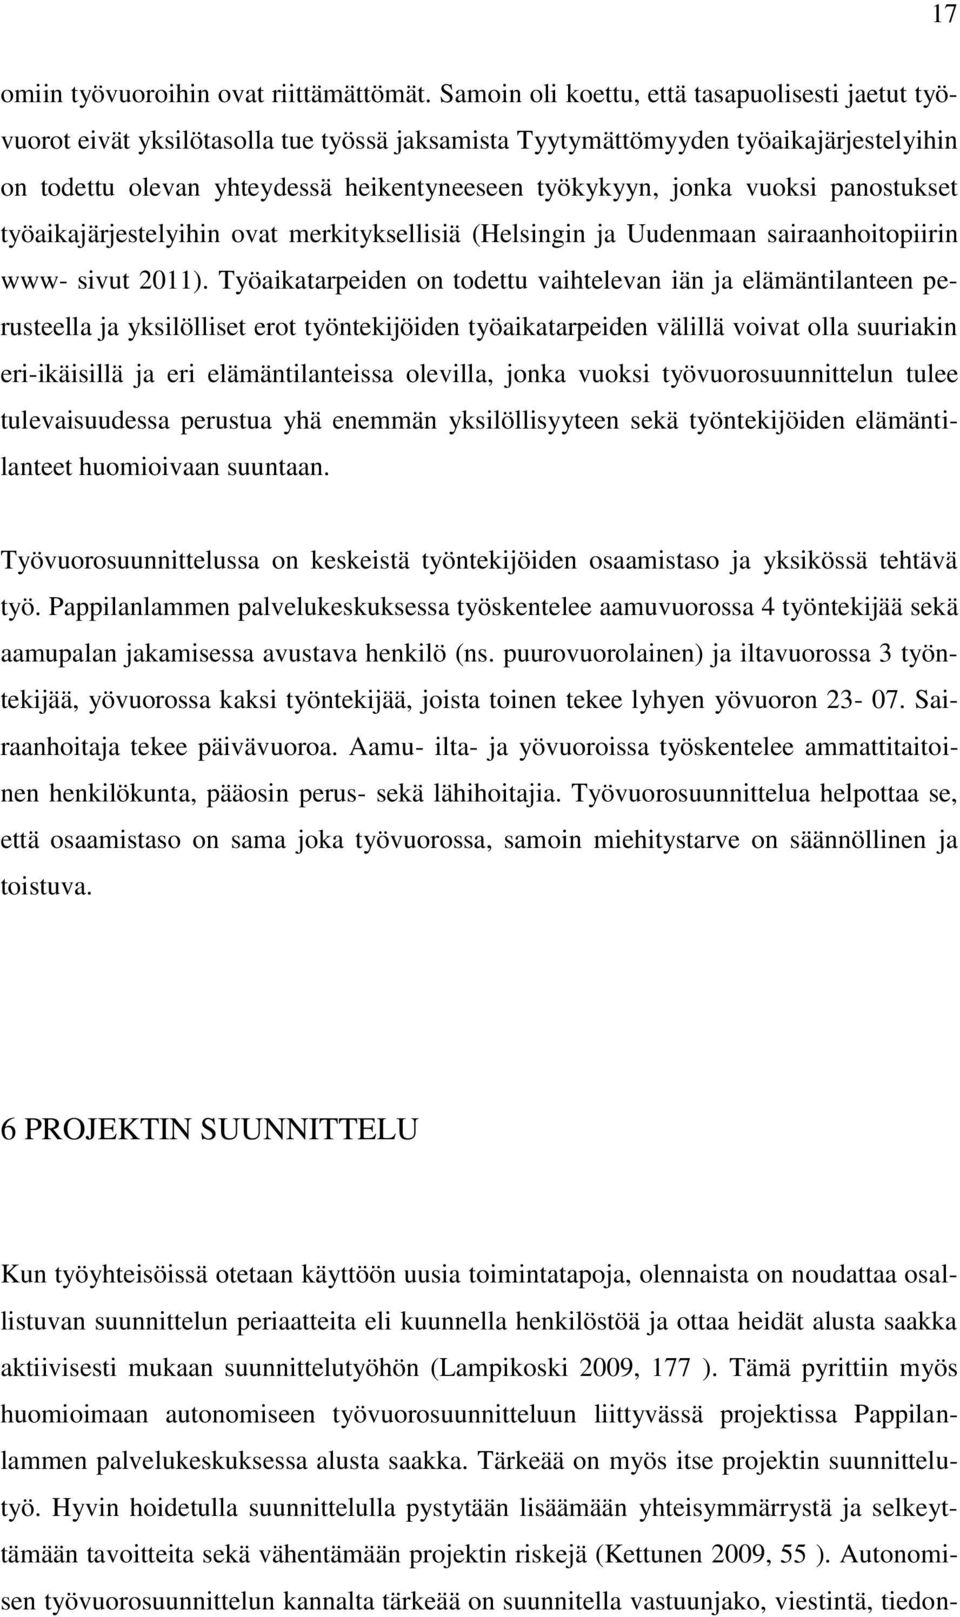 vuoksi panostukset työaikajärjestelyihin ovat merkityksellisiä (Helsingin ja Uudenmaan sairaanhoitopiirin www- sivut 2011).